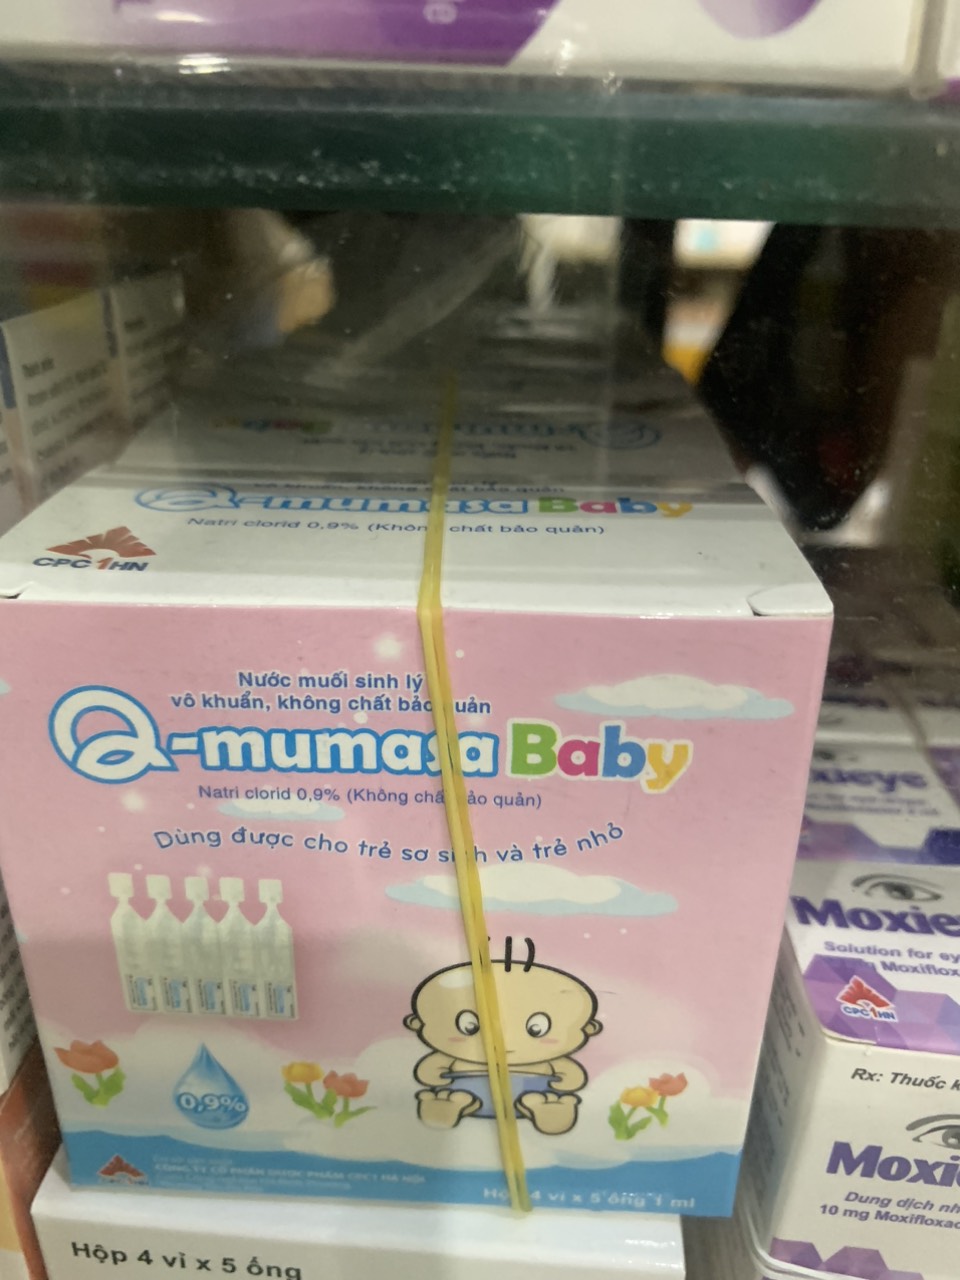 Q-MUMASA BABY 0.9%